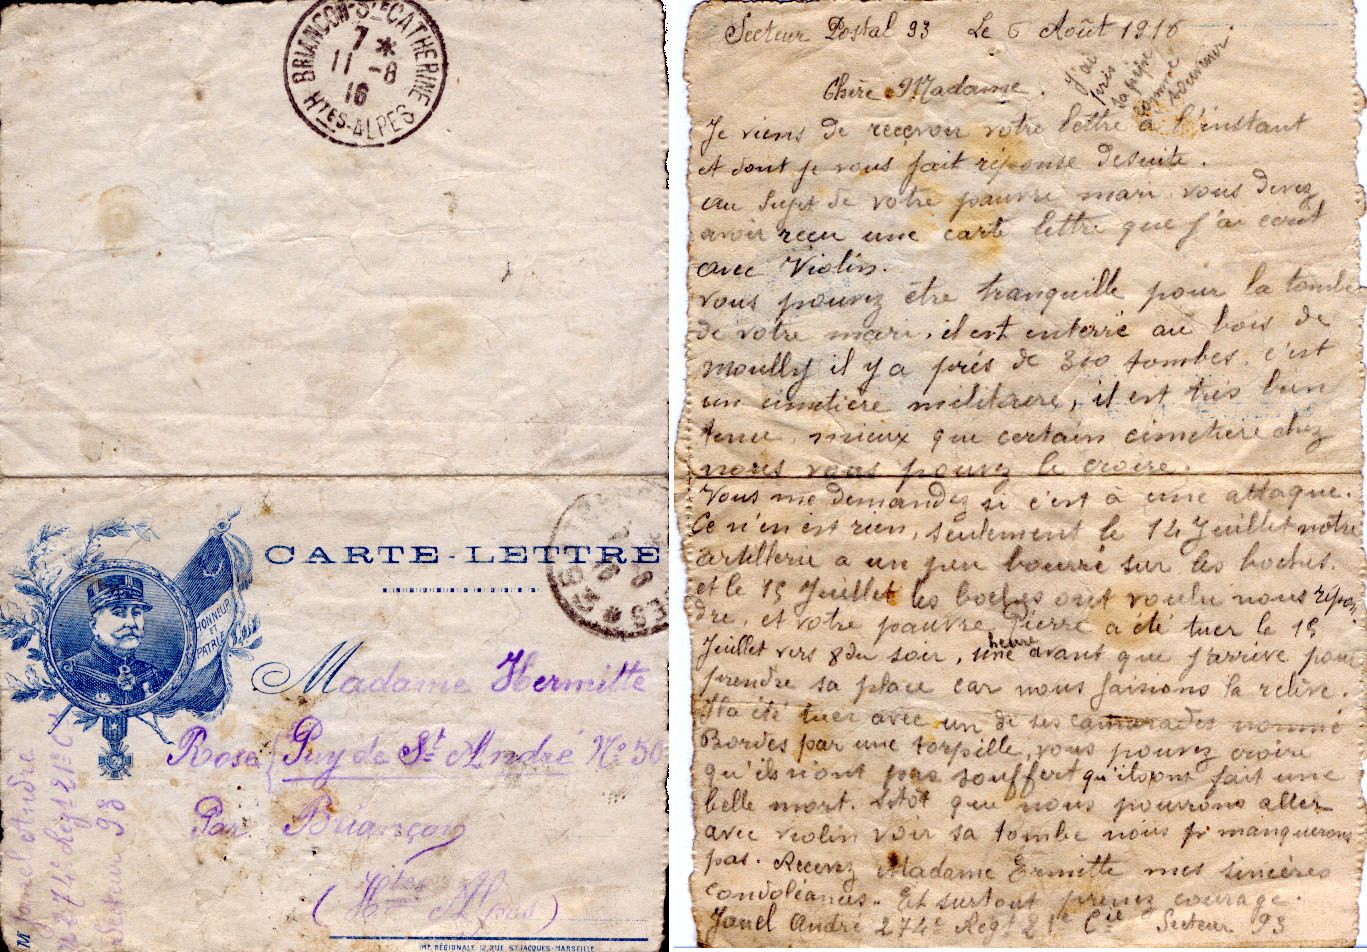 Carte-lettre adressée à sa veuve par son camarade de combat qui a pris sa relève, écrite le lendemain de sa mort au champ d'honneur